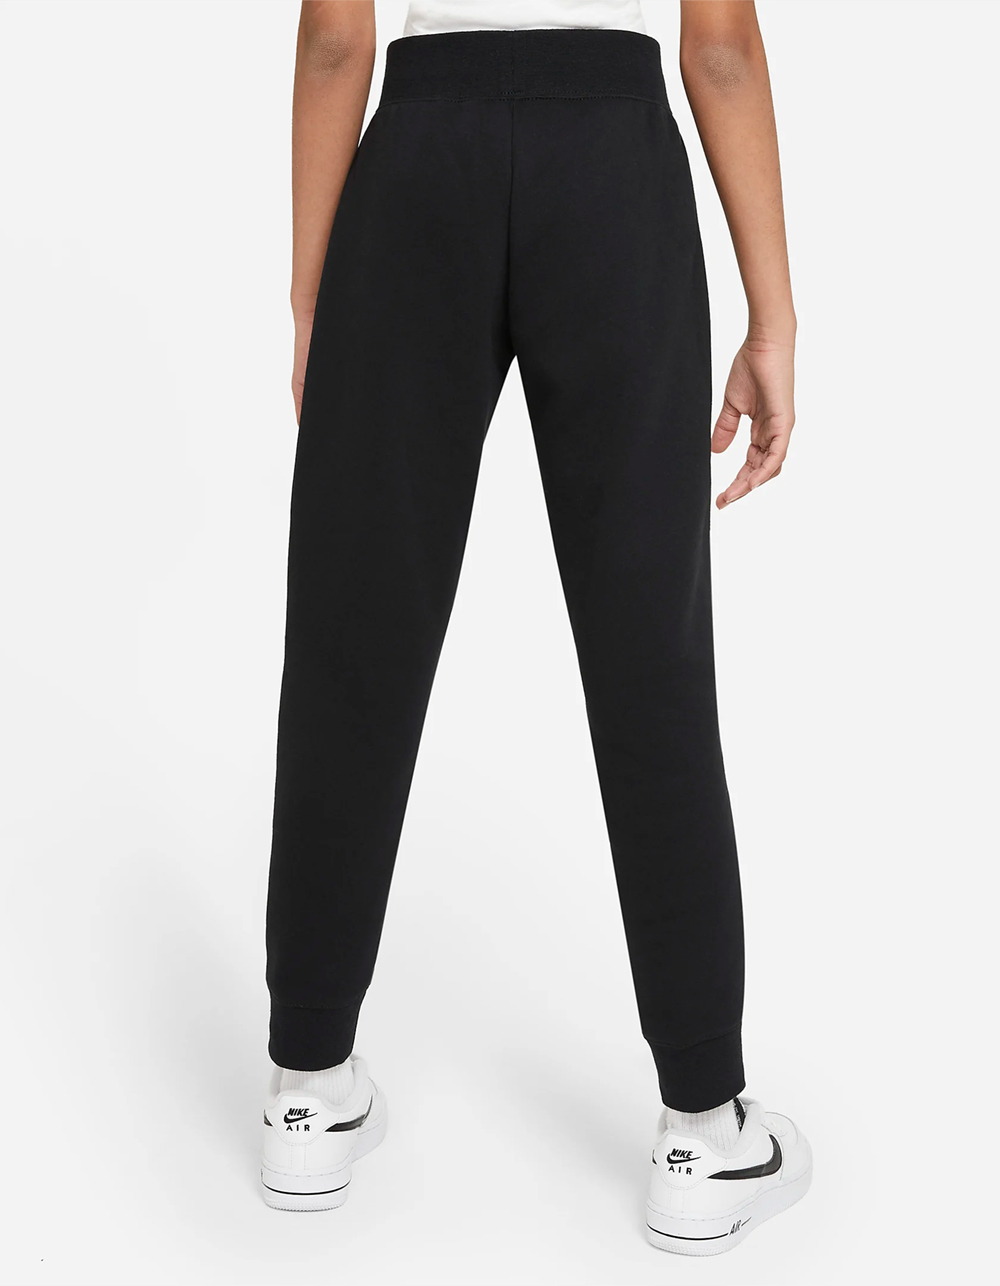 NIKE Sportswear Club Girls Fleece Sweatpants - BLK/WHT | Tillys